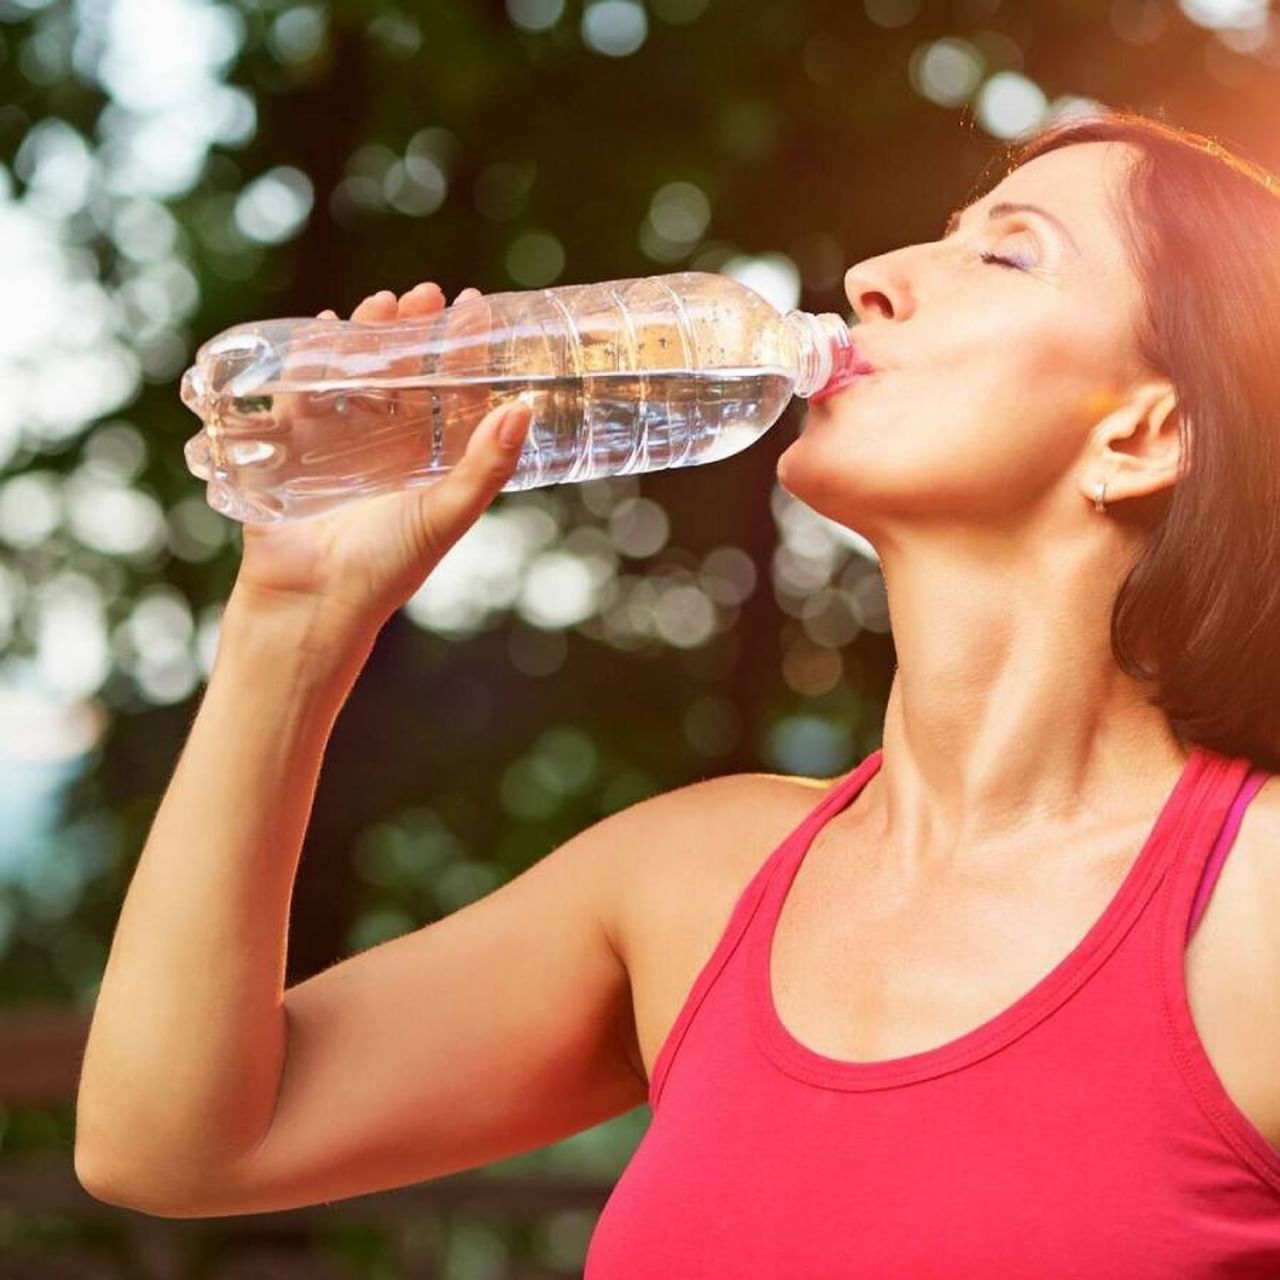 उन्हाळ्यात तुमच्या आरोग्याची काळजी घेण्याचा सर्वात सोपा आणि उत्तम उपाय म्हणजे तुमच्या शरीराला जास्तीत जास्त पाणी देणे. उष्माघात टाळण्यासाठी शरीरात पाण्याची कमतरता भासणार नाही याची काळजी घ्यावी लागेल. म्हणूनच सतत पाणी पिणे गरजेचे आहे.
